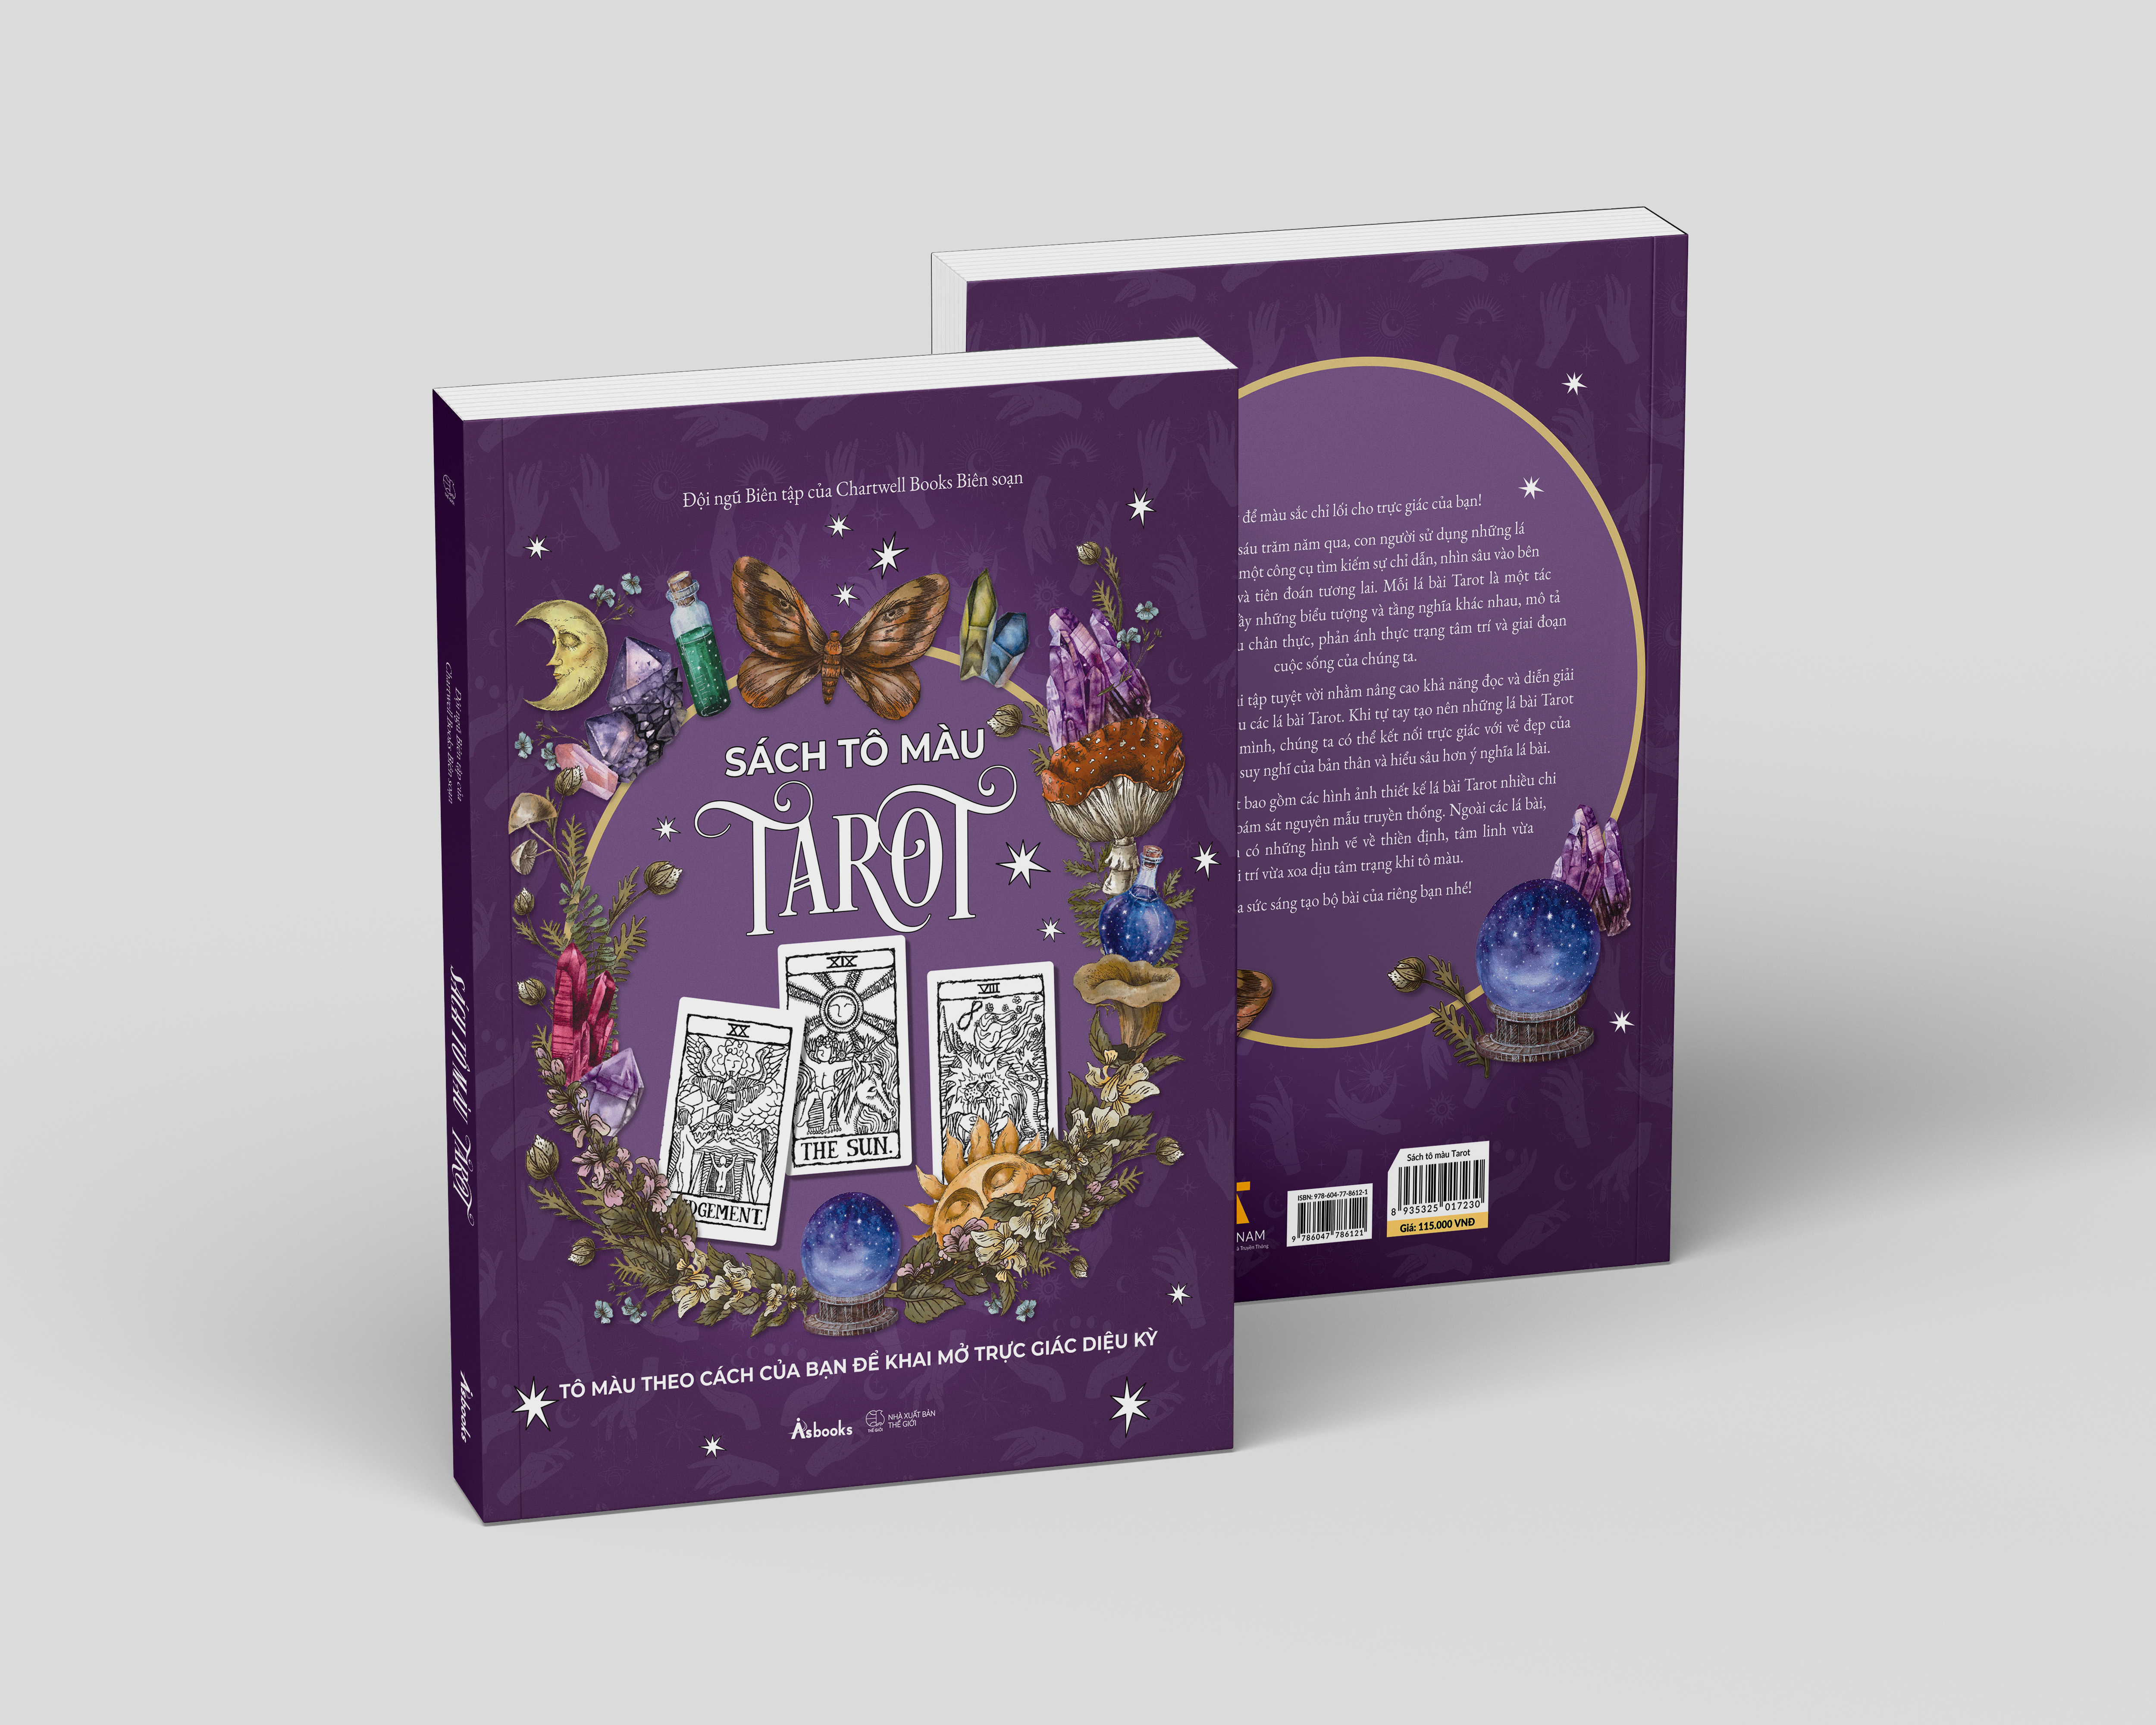 Sách Tô Màu Tarot - Tô Màu Theo Cách Của Bạn Để Khai Mở Trực Giác Diệu Kỳ